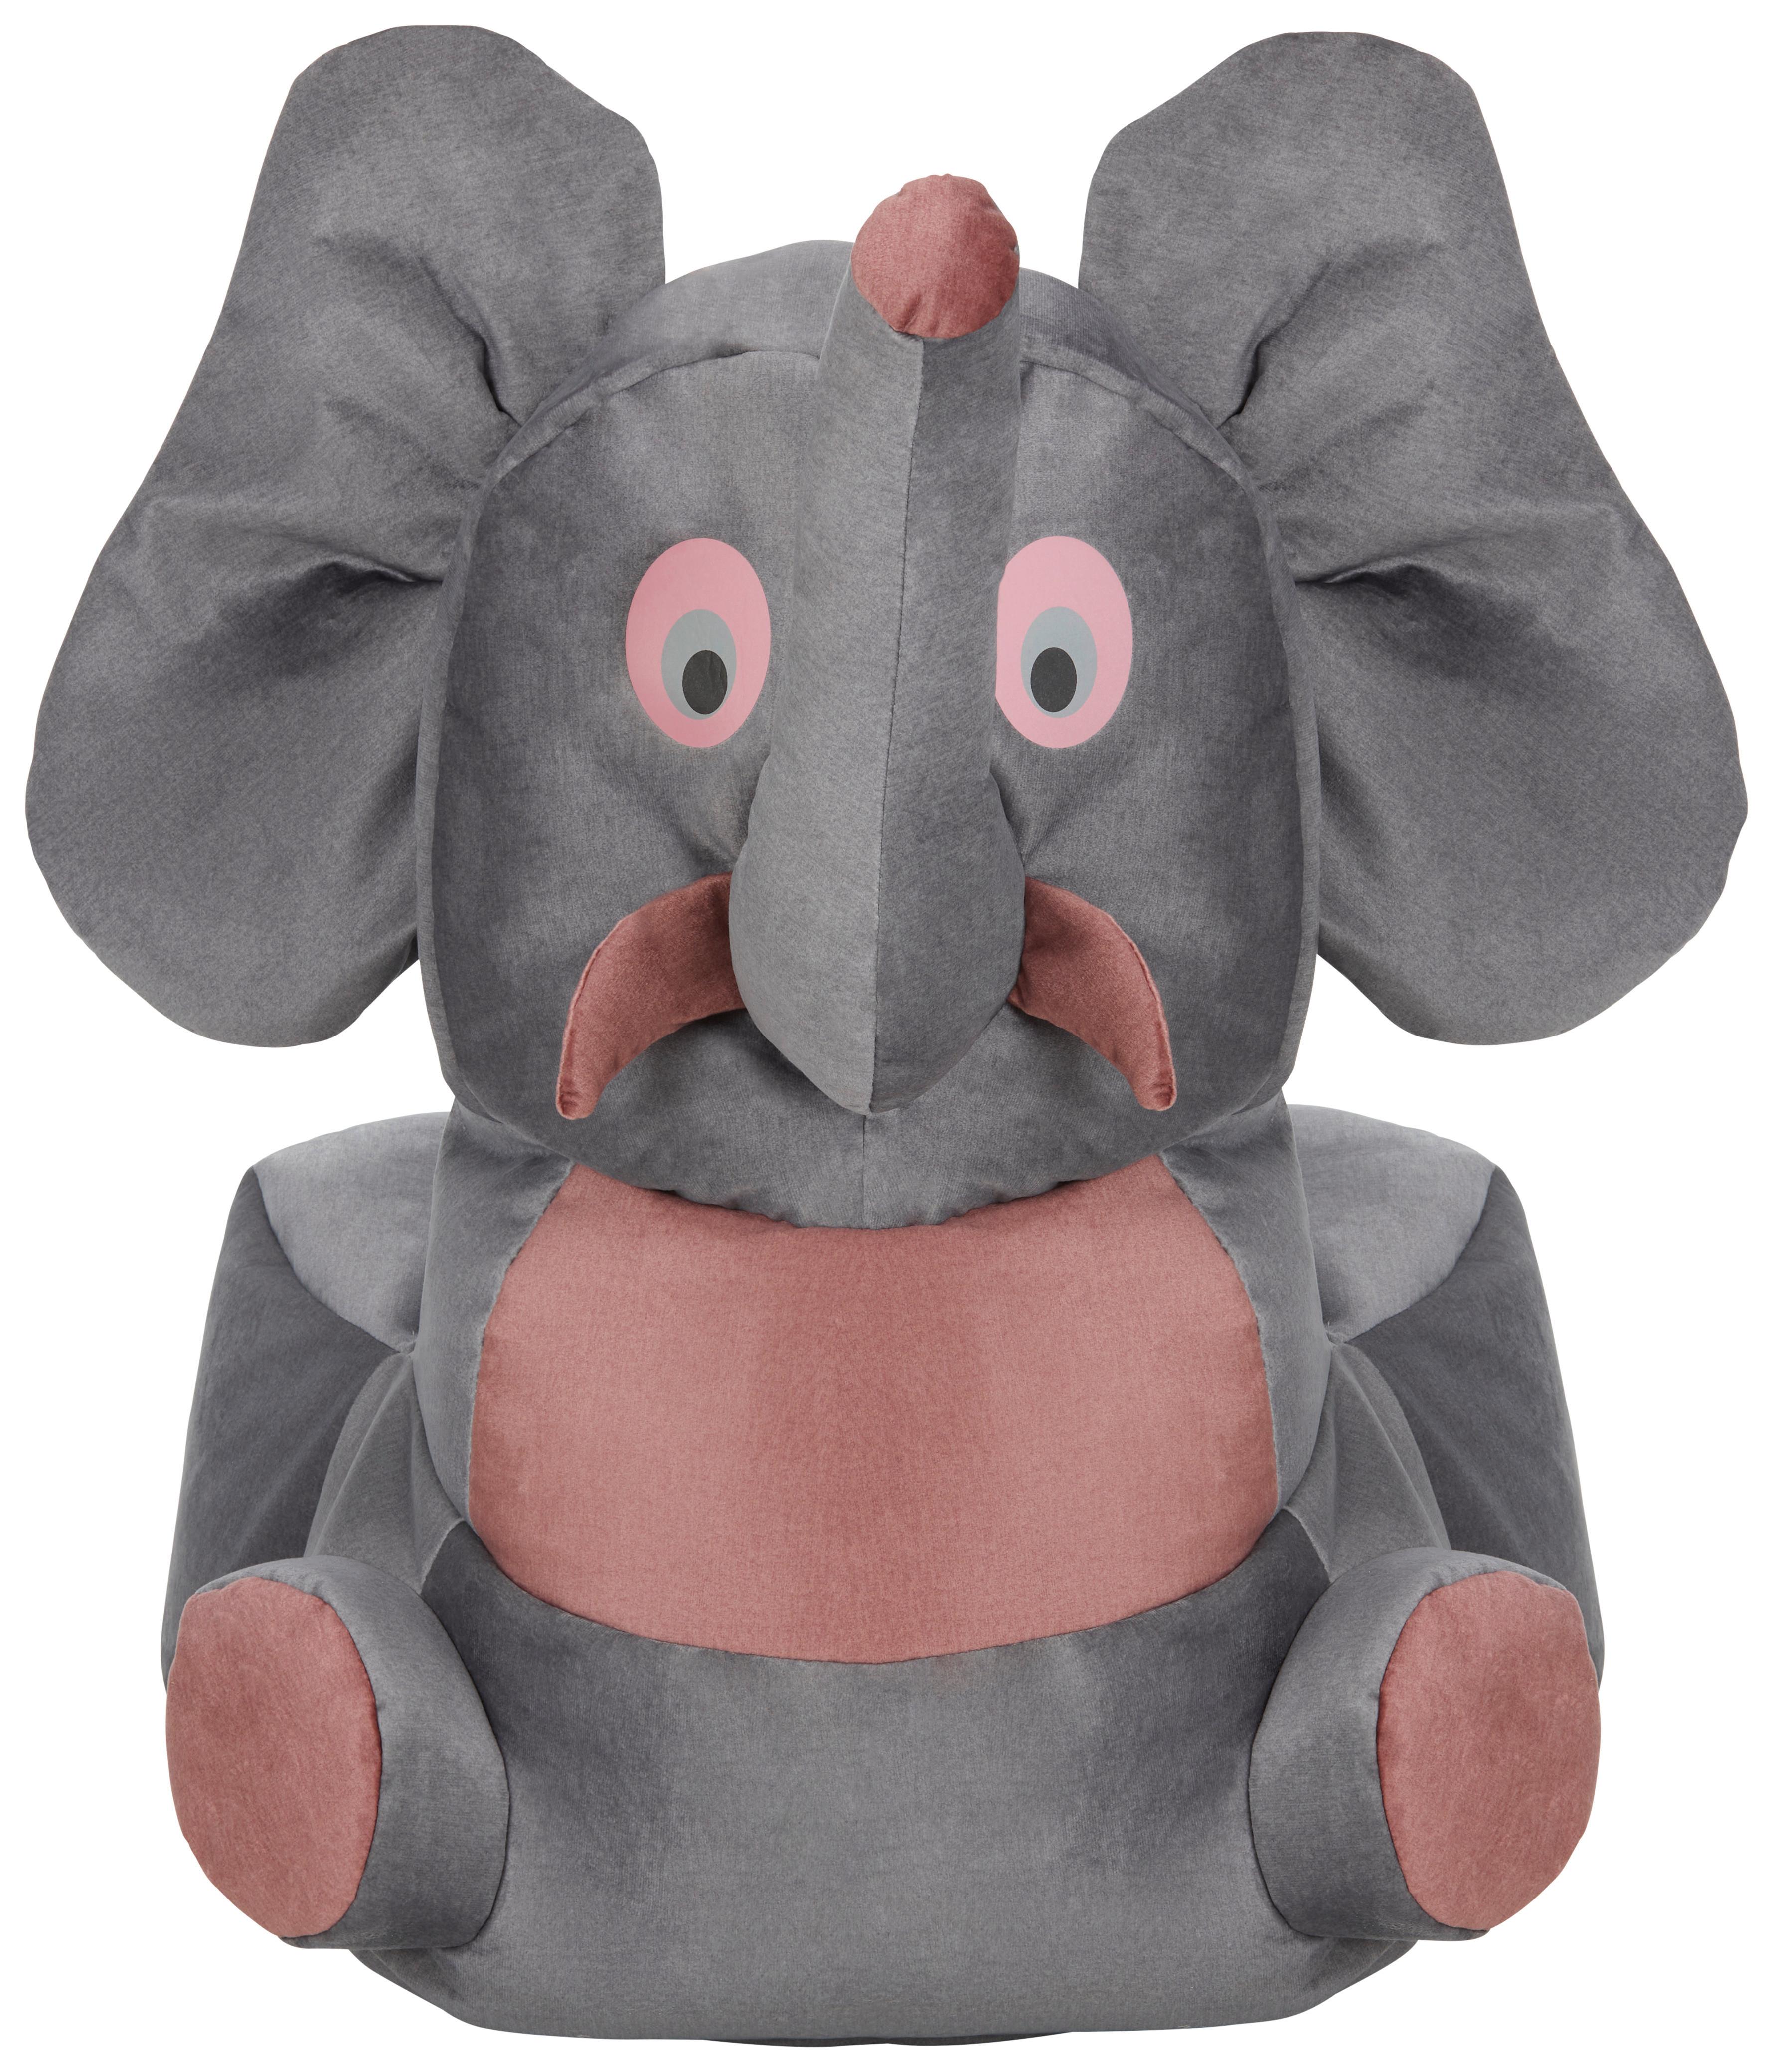 Dětksé Křeslo Elephant - šedá/růžová, textil (55/80/75cm) - Modern Living